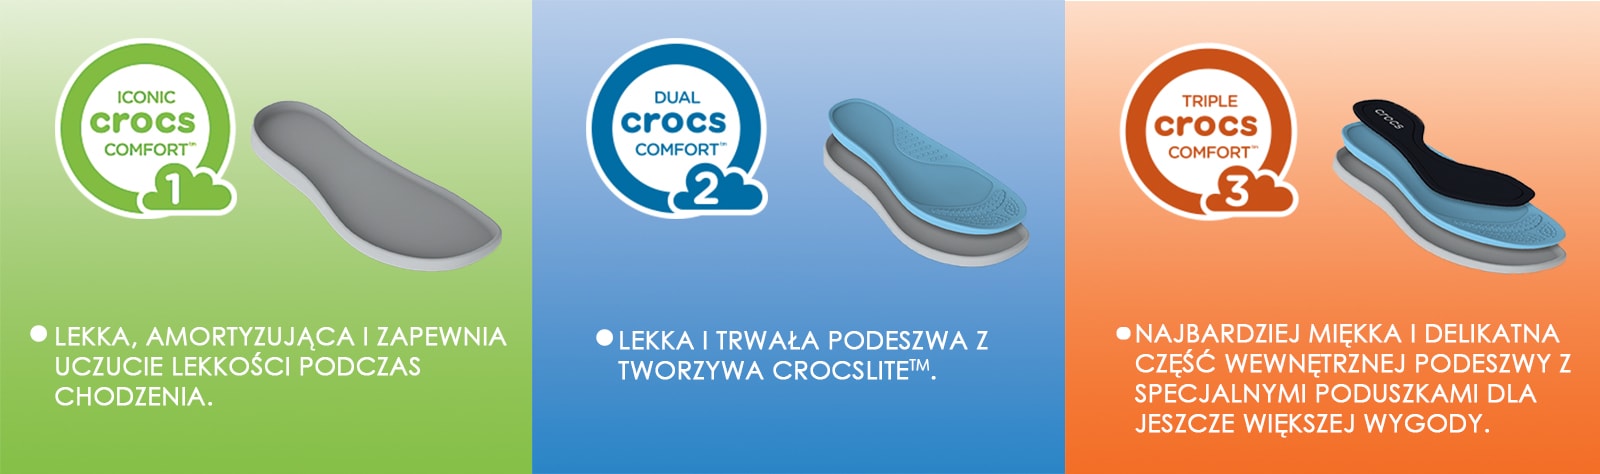 Crocs comforto lygiai_PL-min